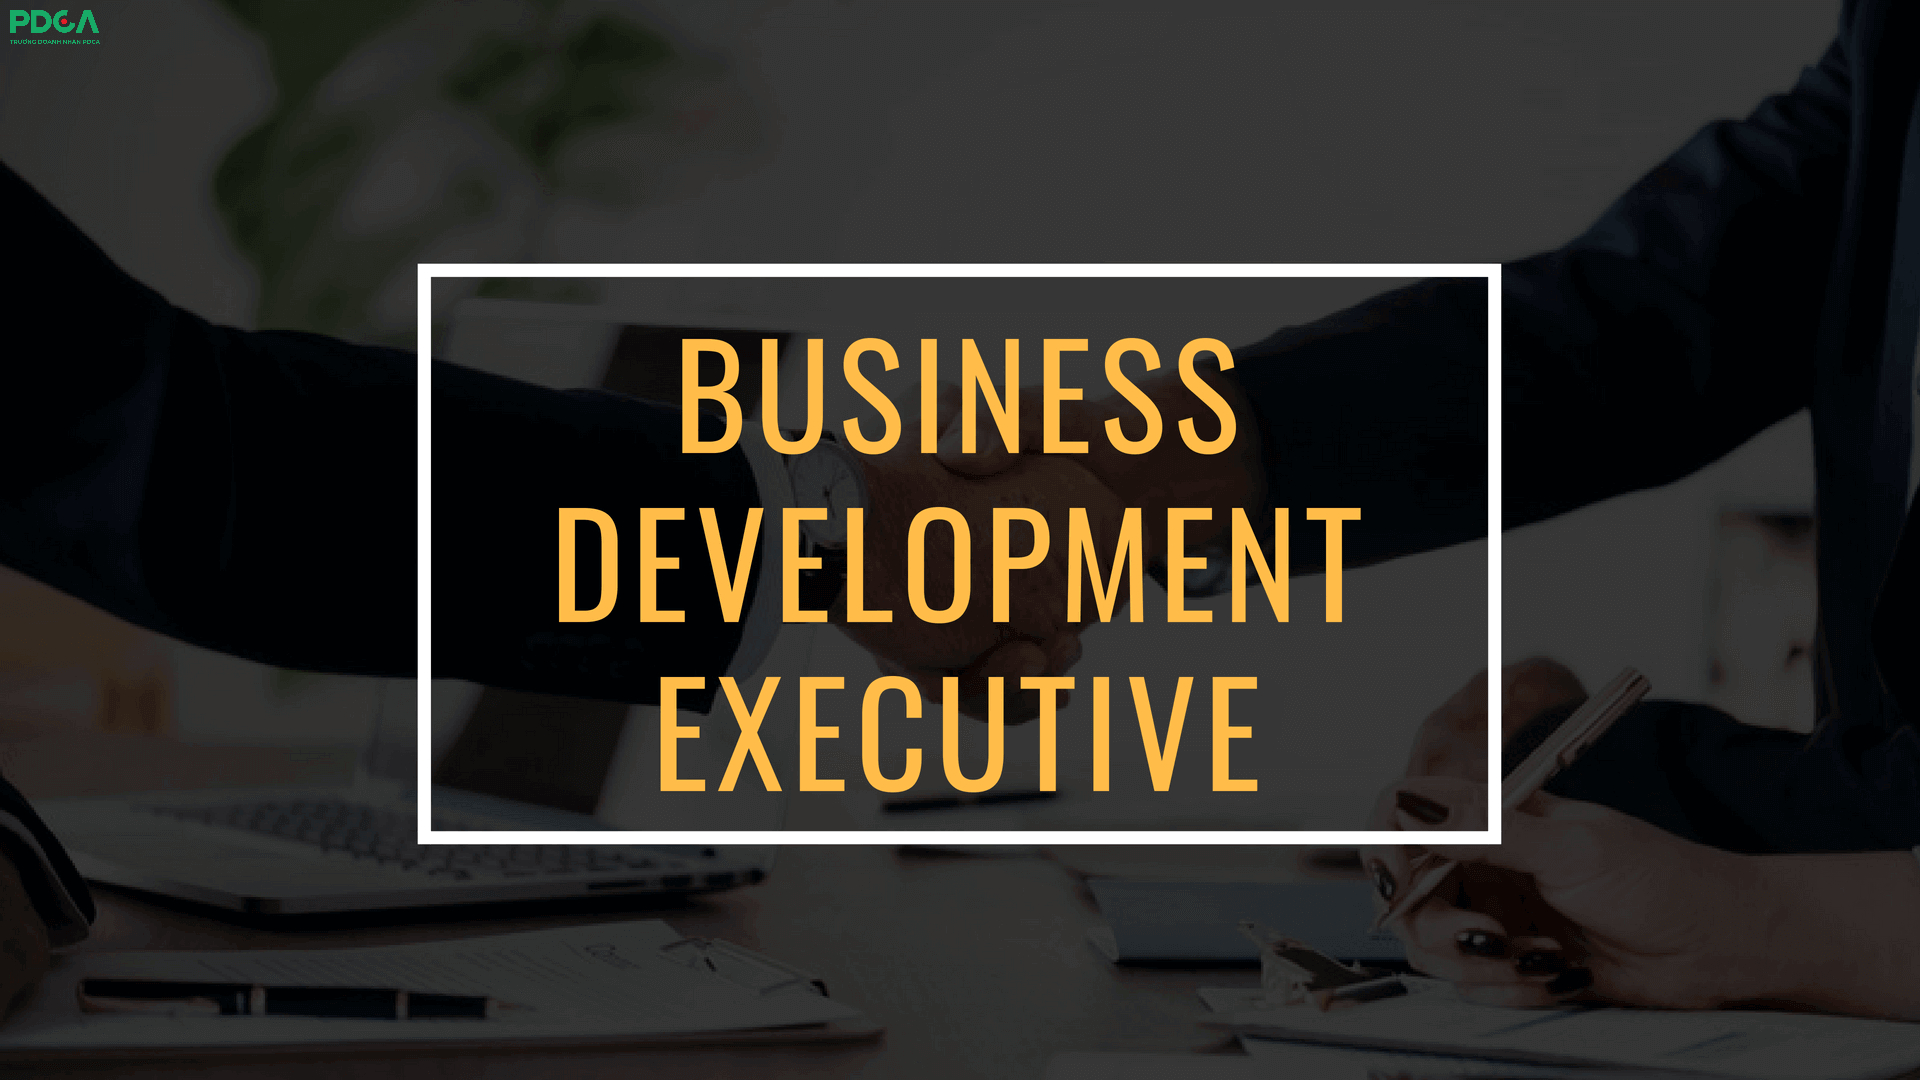 Business Development Excecultive là nhân viên phát triển kinh doanh